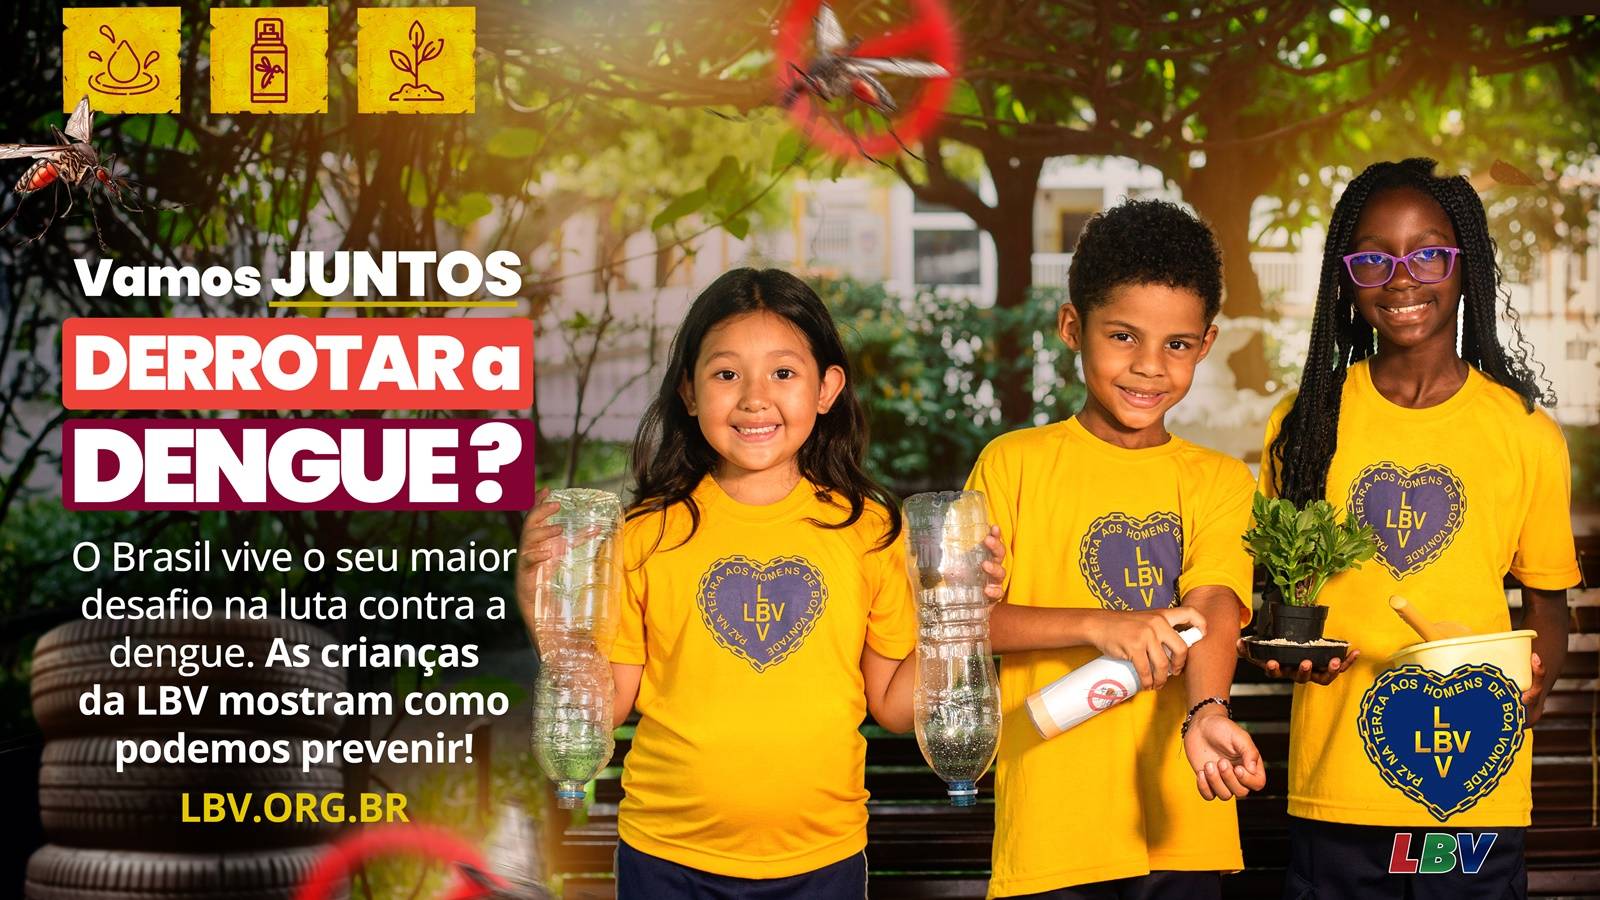 LBV lança campanha de combate à dengue com recado das crianças:  “Diga Sim à Prevenção”